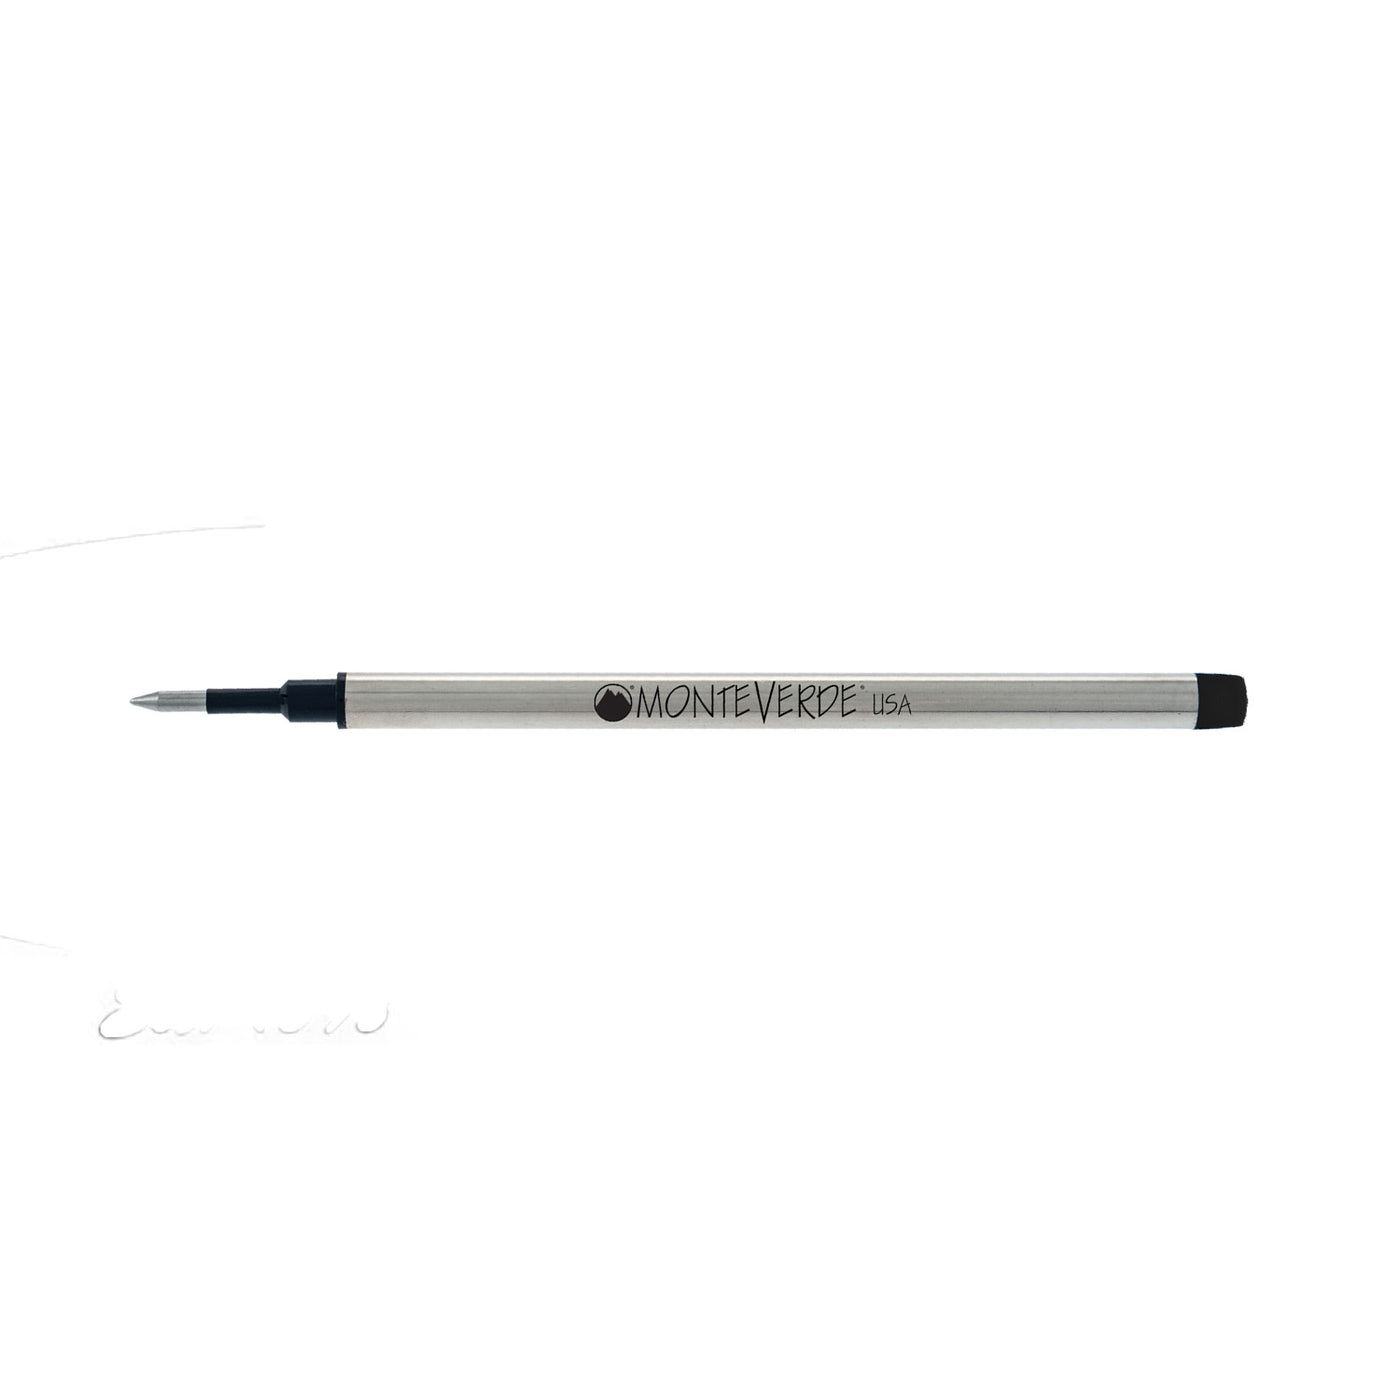 Monteverde Roller Ball Pen Refill for S.T. Dupont - Fine - Black - Pack of 2 3